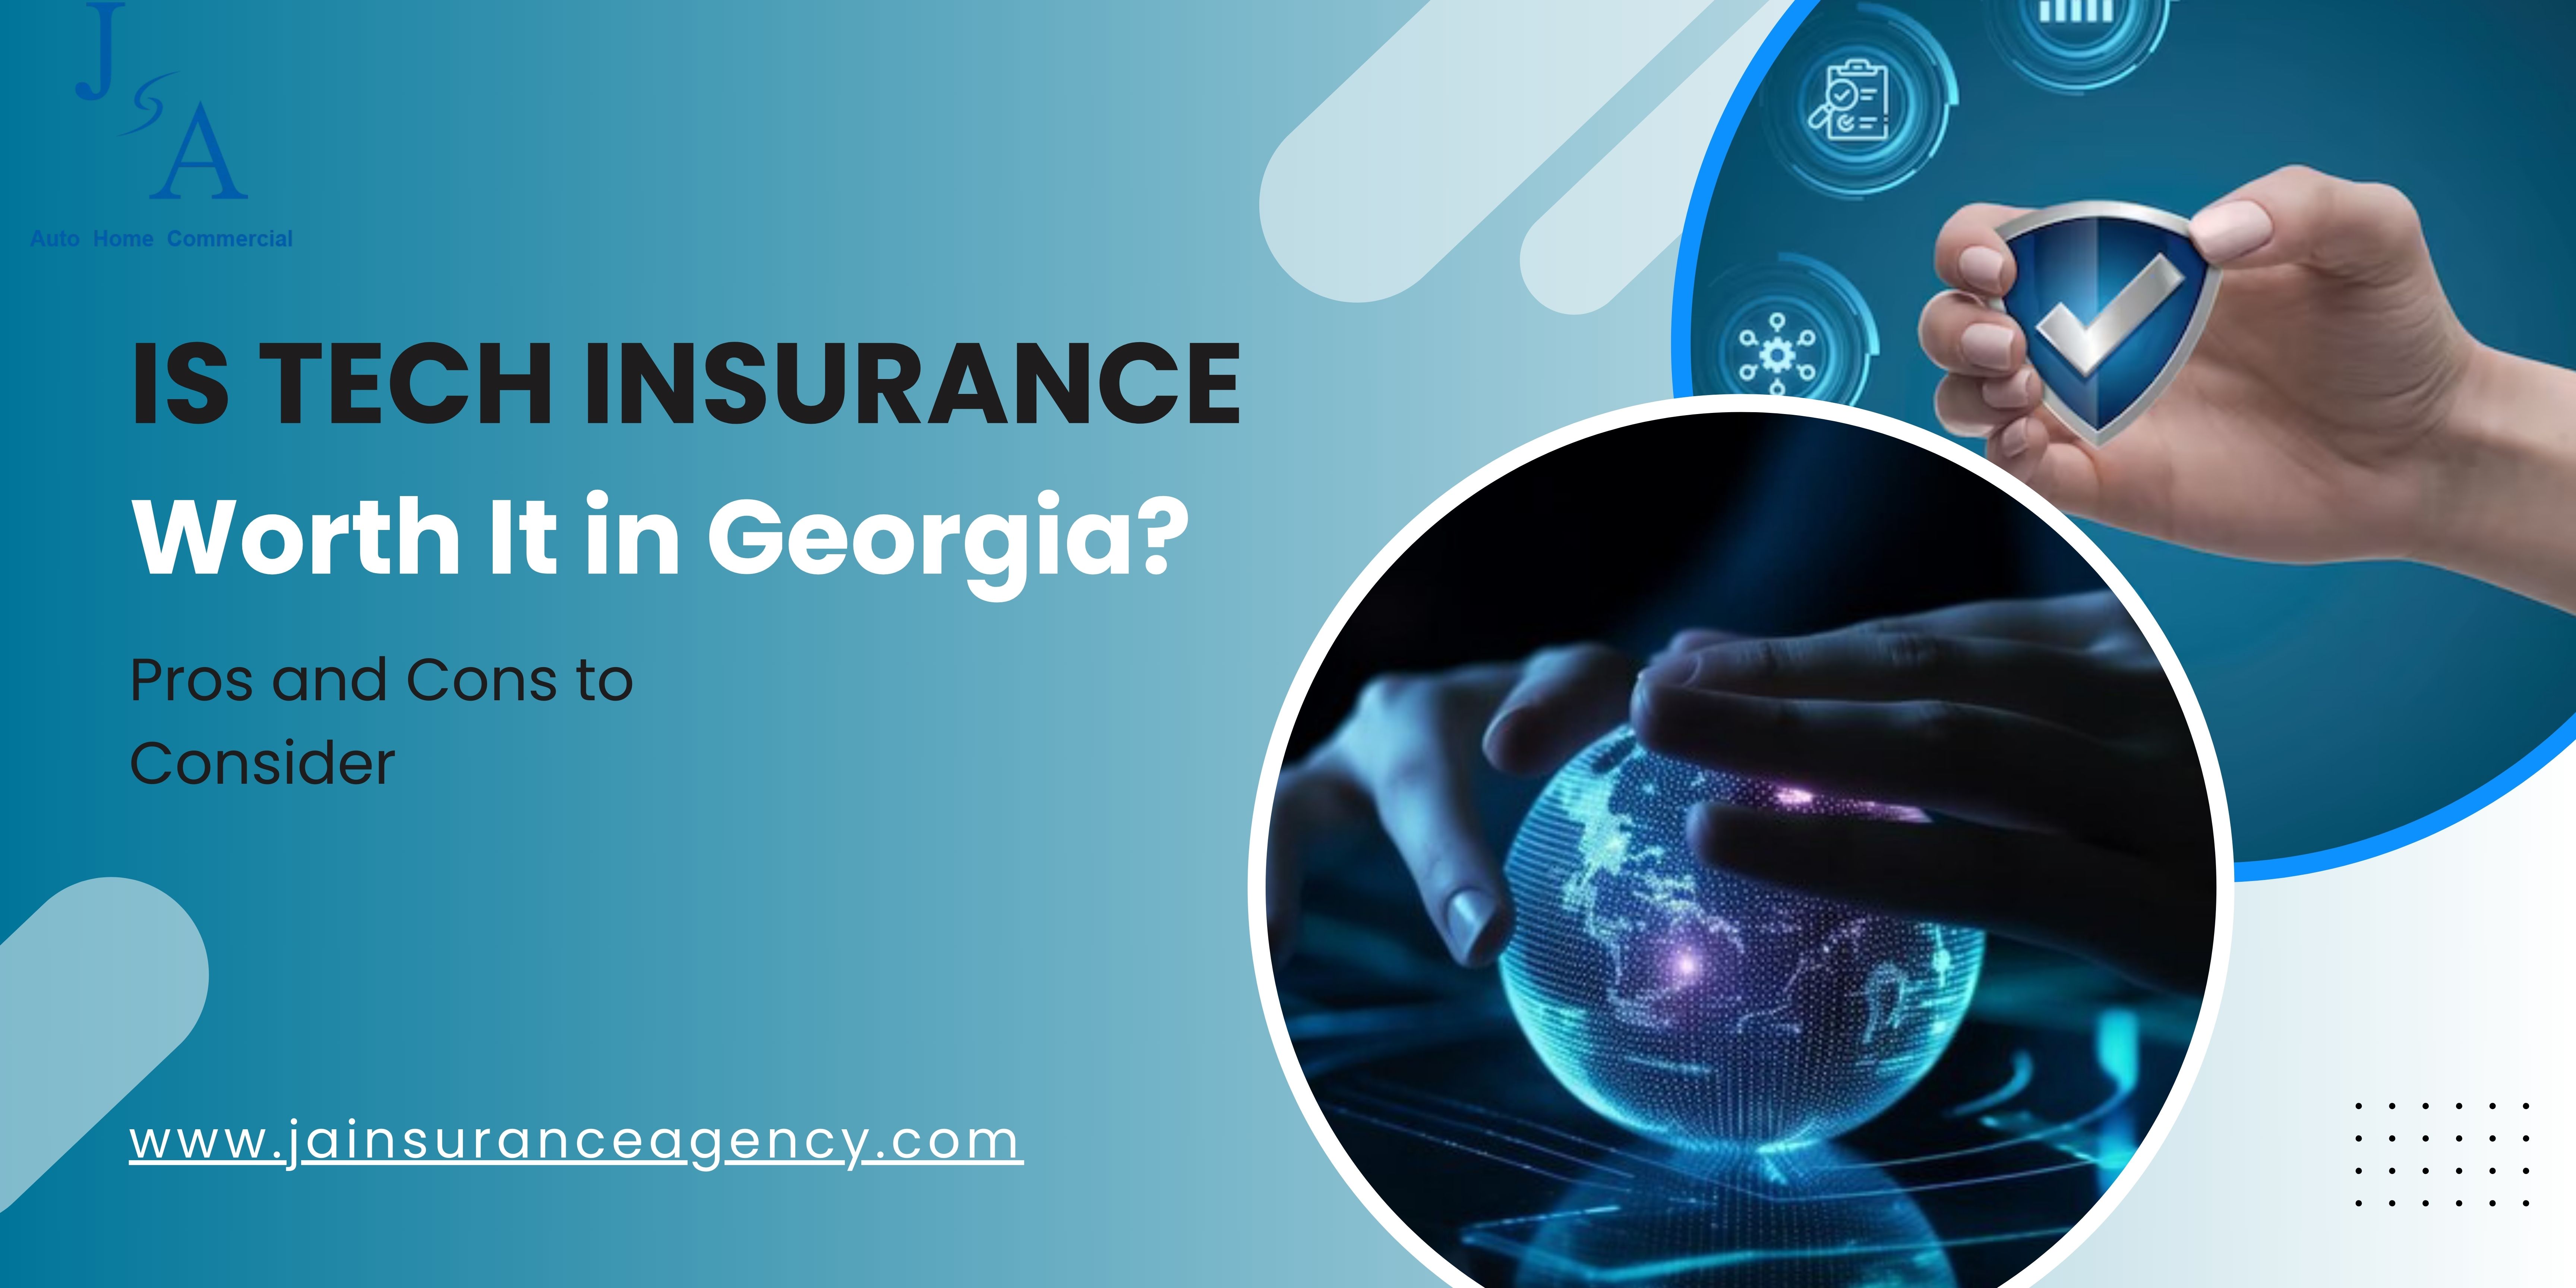 Is Tech Insurance Worth It in Georgia? 